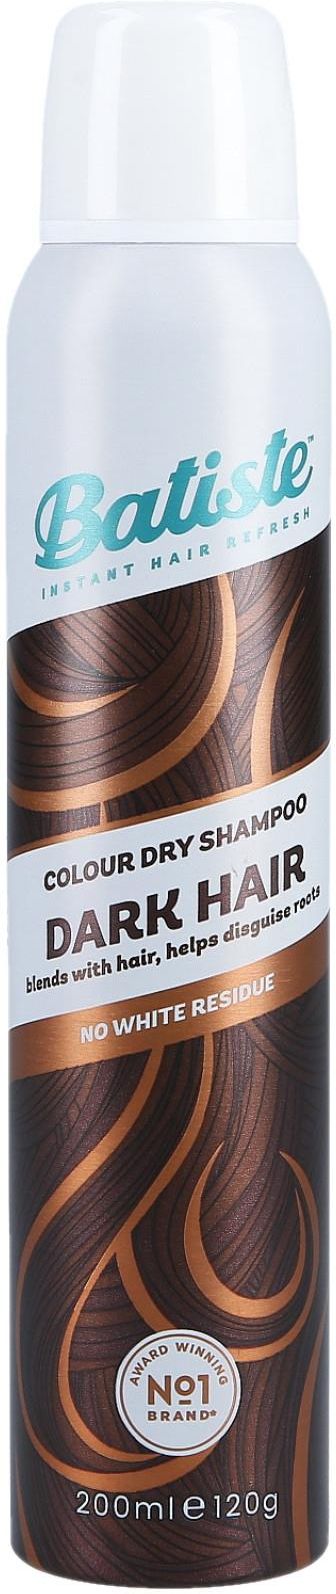 suchy szampon batiste dla ciemnych włosów